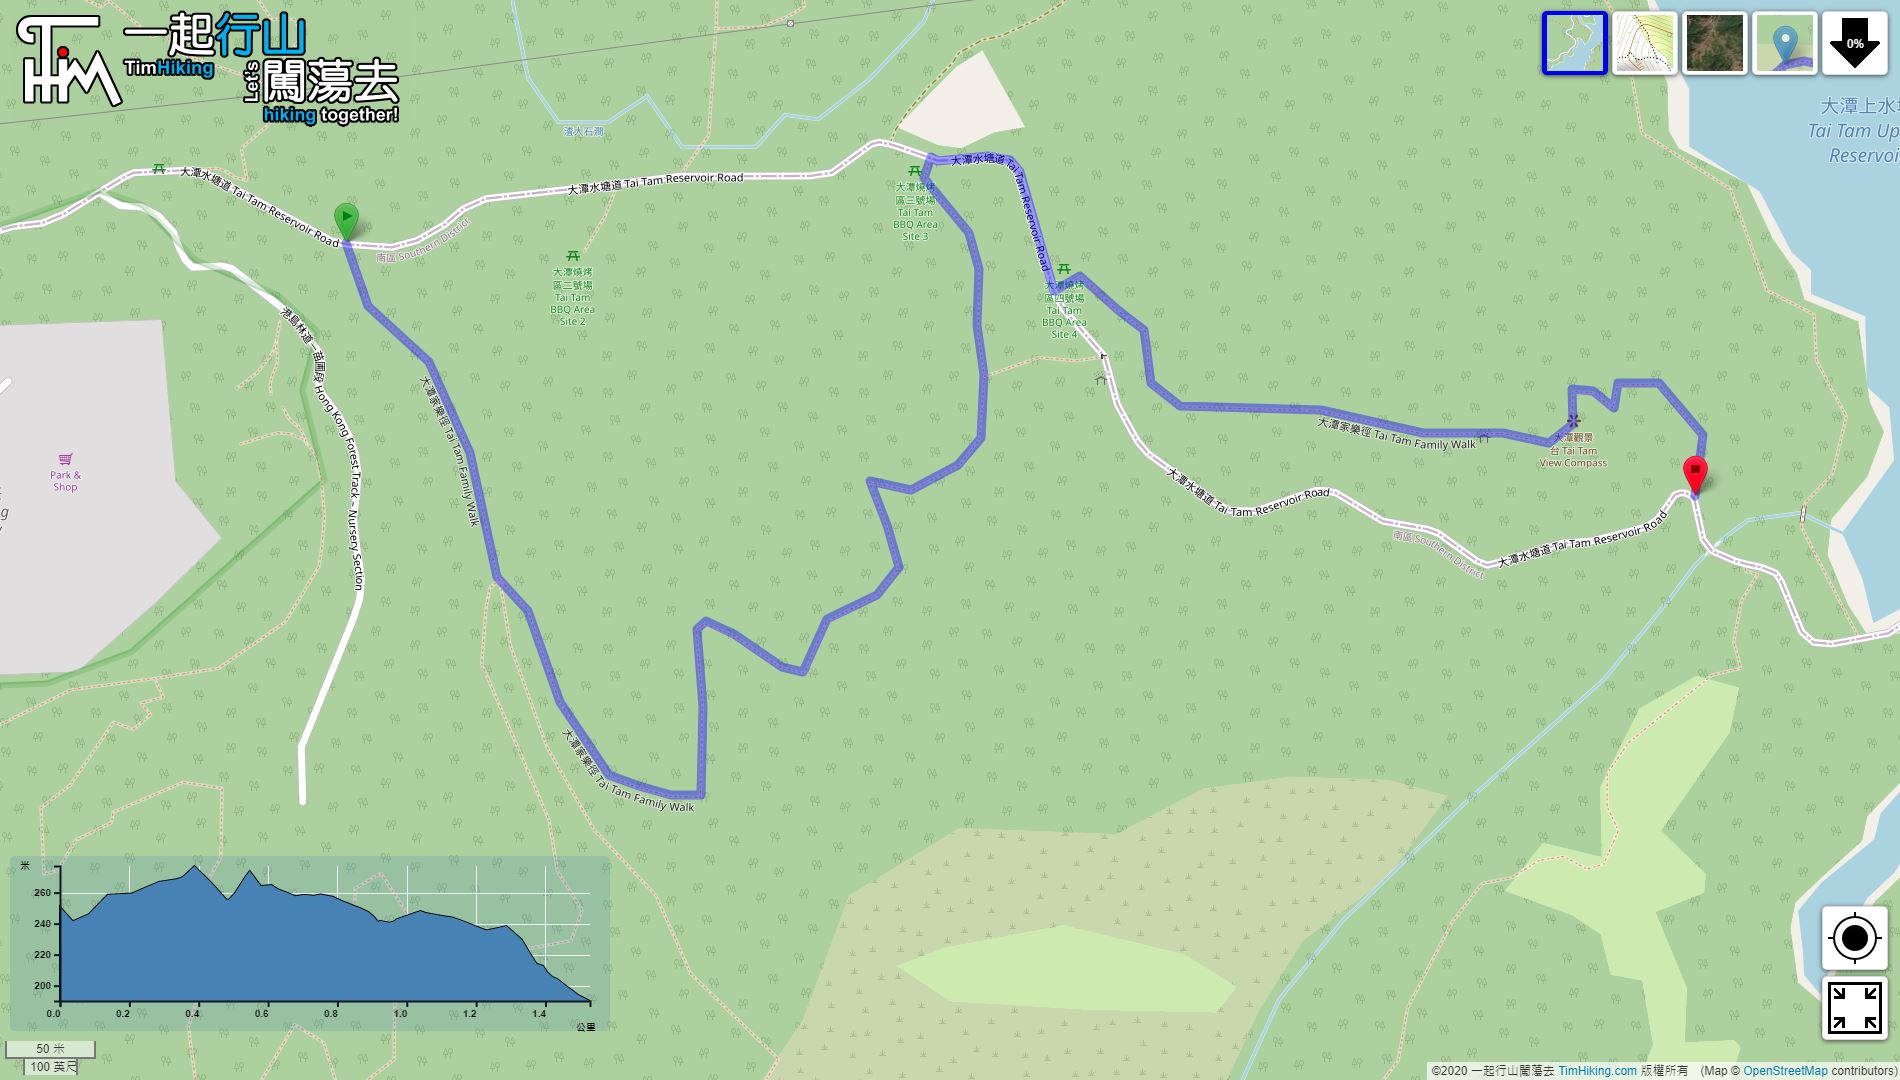 「Tai Tam Family Trail」路線Map